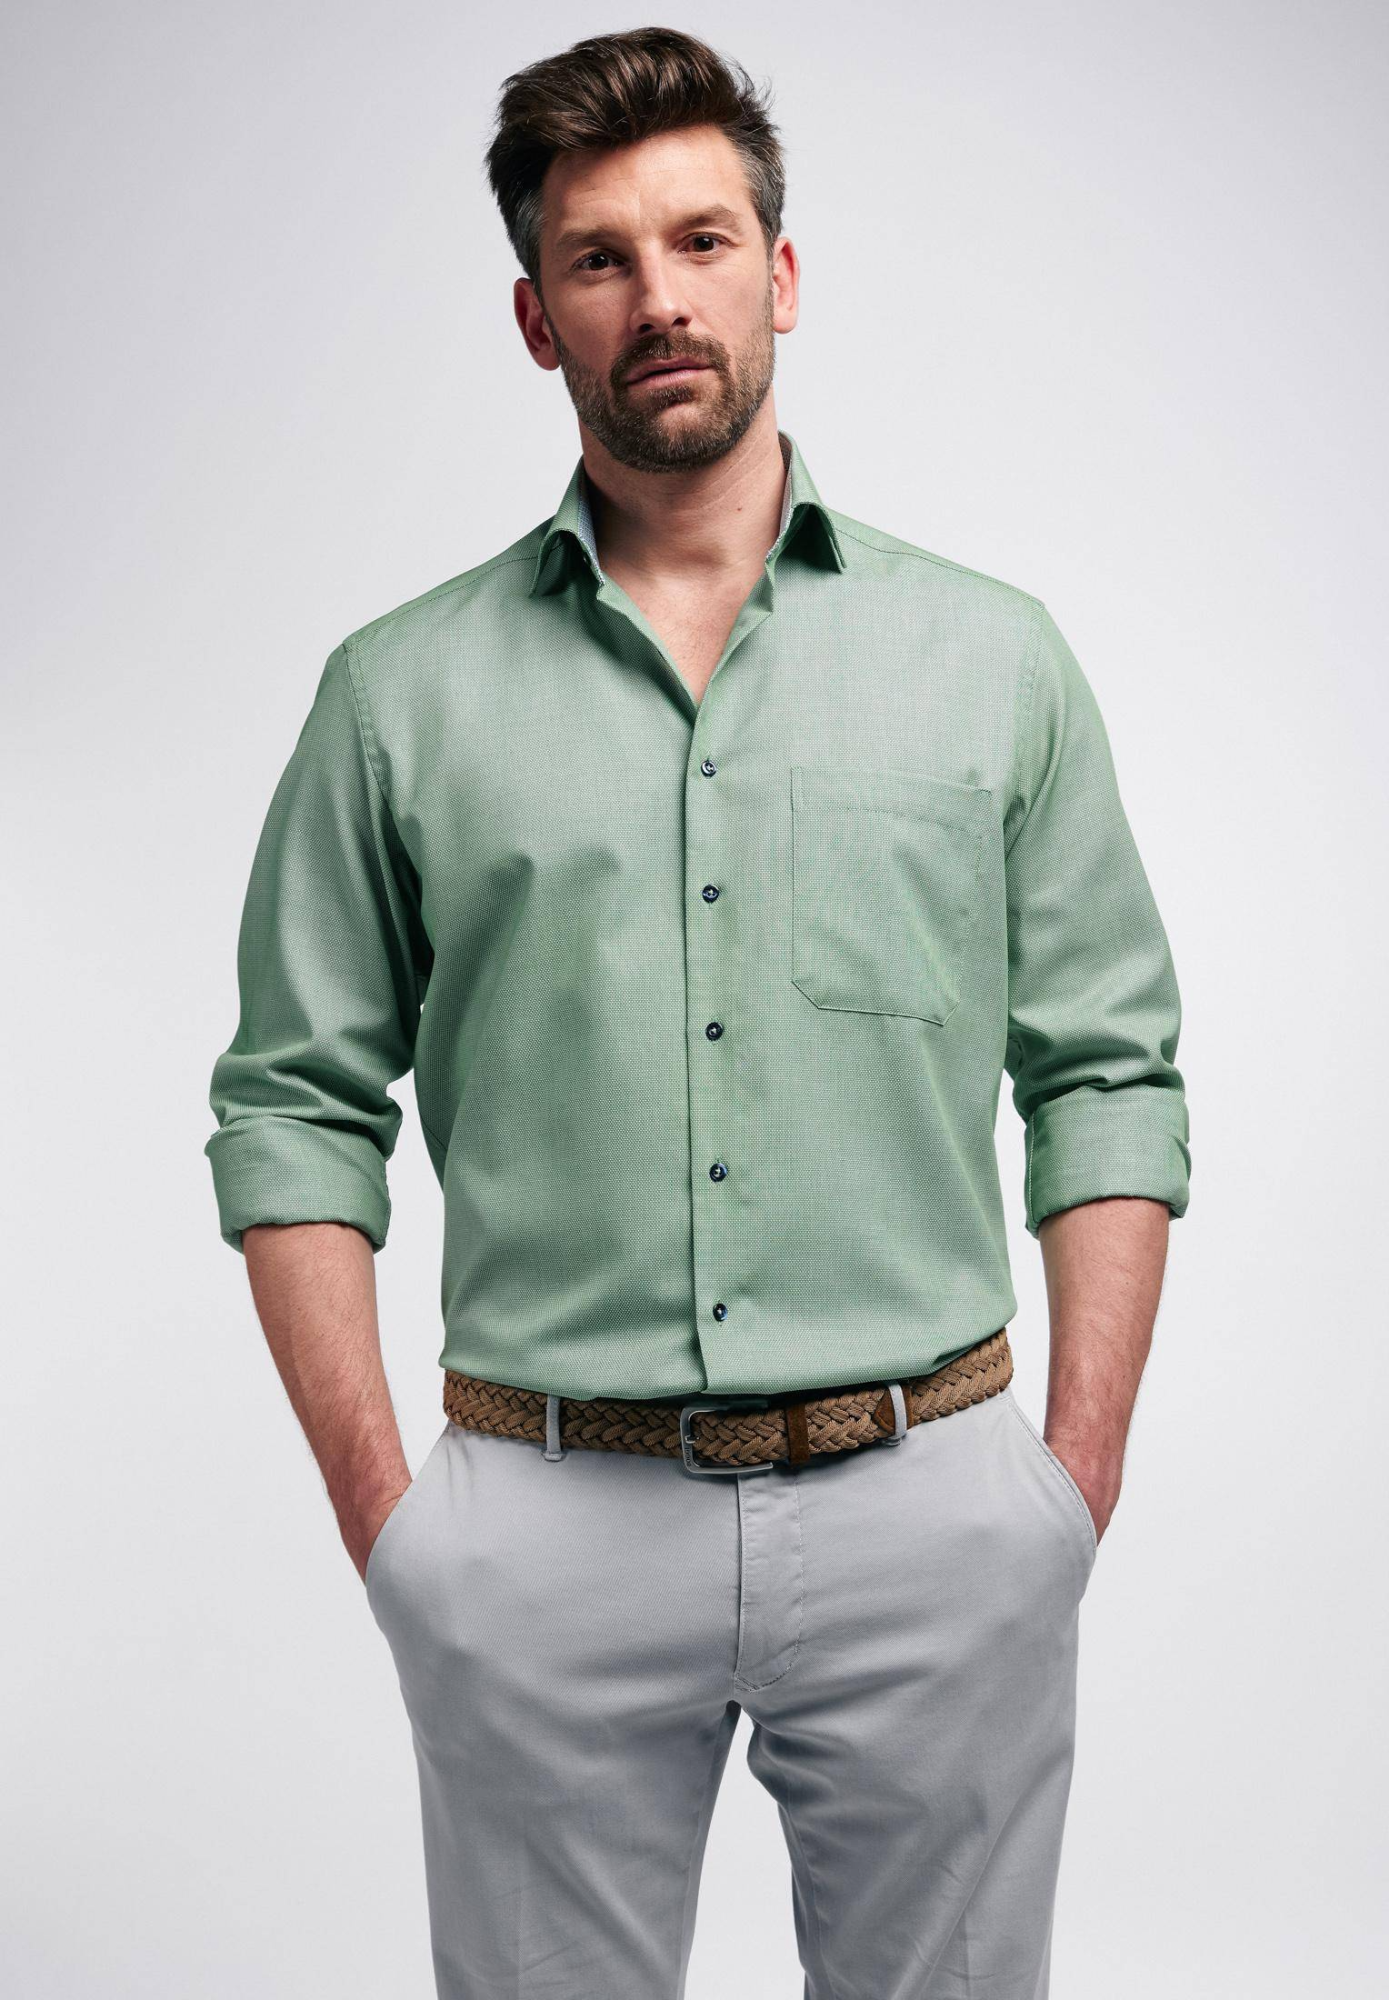 Мужская рубашка ETERNA, зеленая, цвет зеленый, размер 58 - фото 1